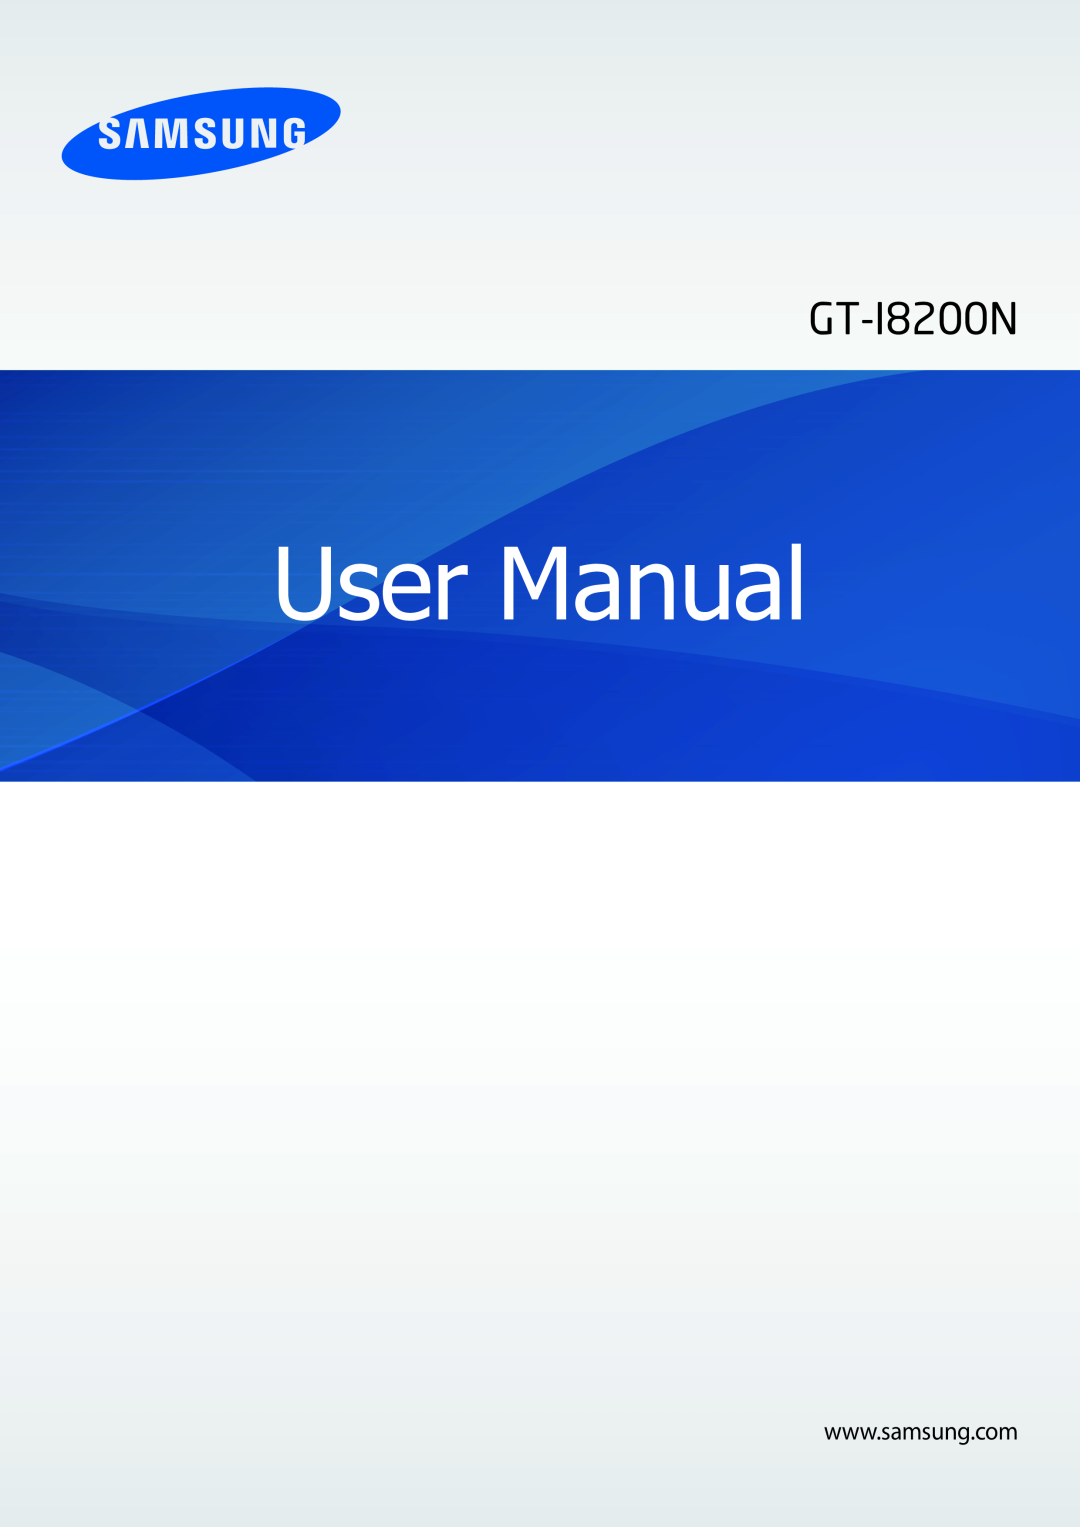 Samsung GT-I8200OKNVIT, GT-I8200ZNNDBT, GT-I8200MBNTCL, GT-I8200MBNDBT, GT2I8200ZNNDBT manual User Manual, GT-I8200N 